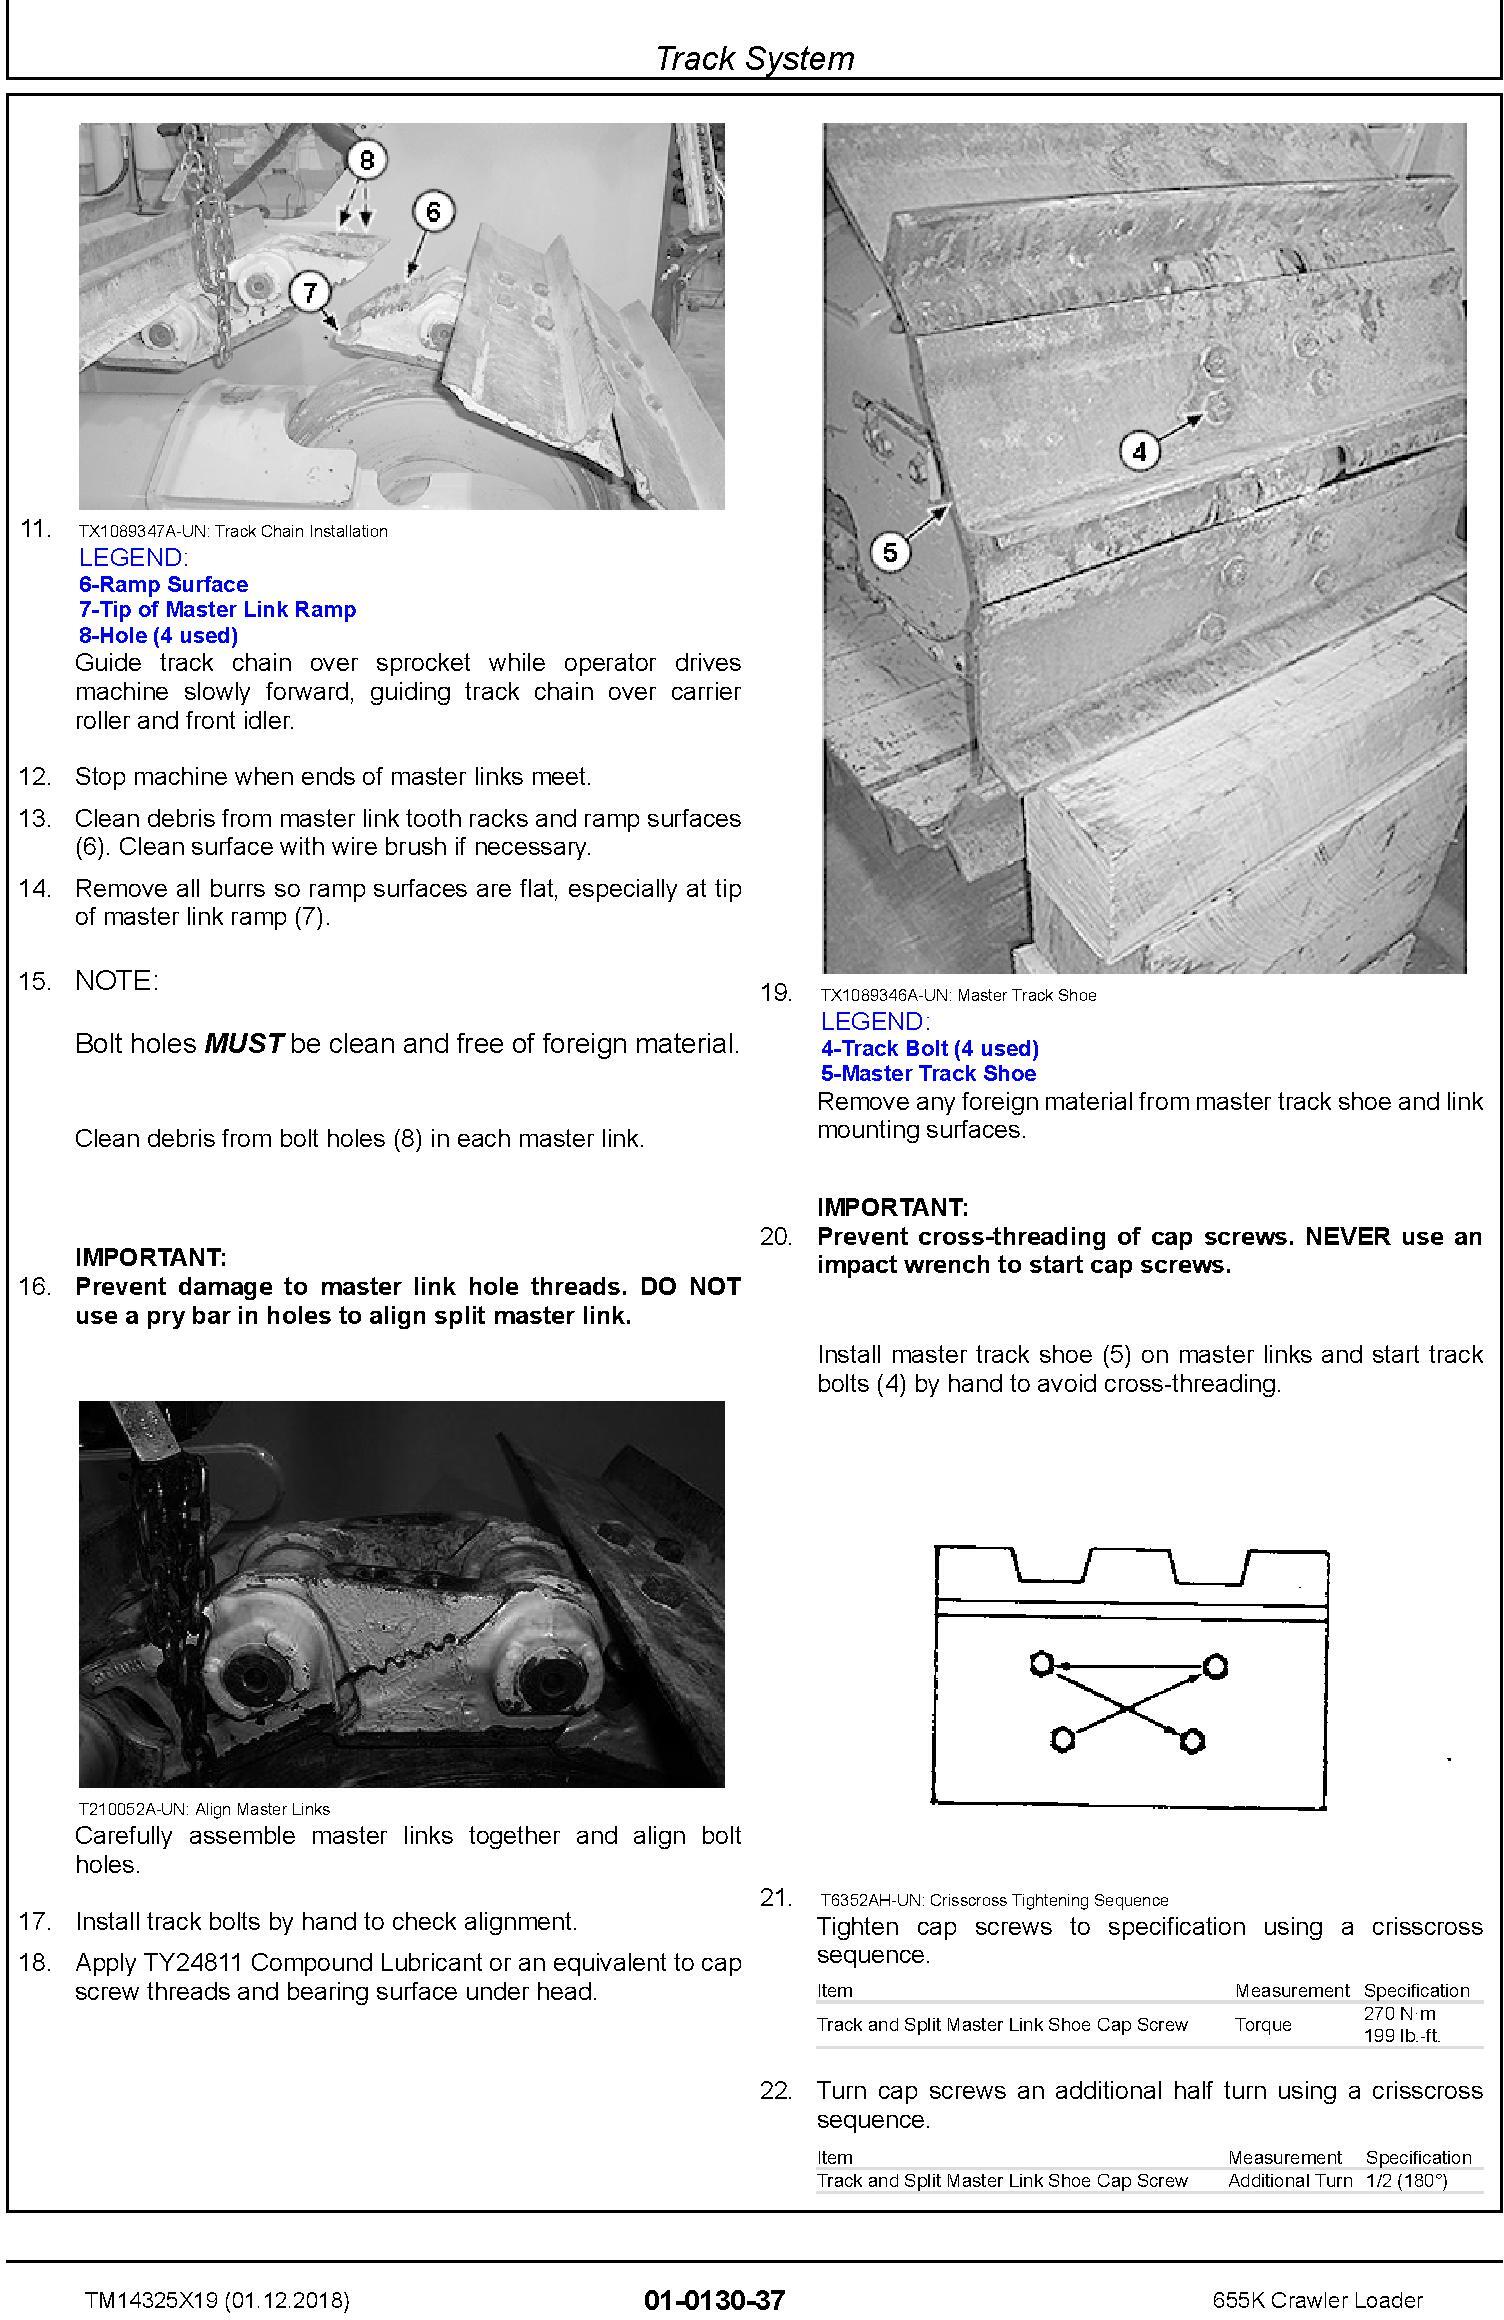 John Deere 655K Crawler Loader Repair Technical Manual (TM14325X19) - 2